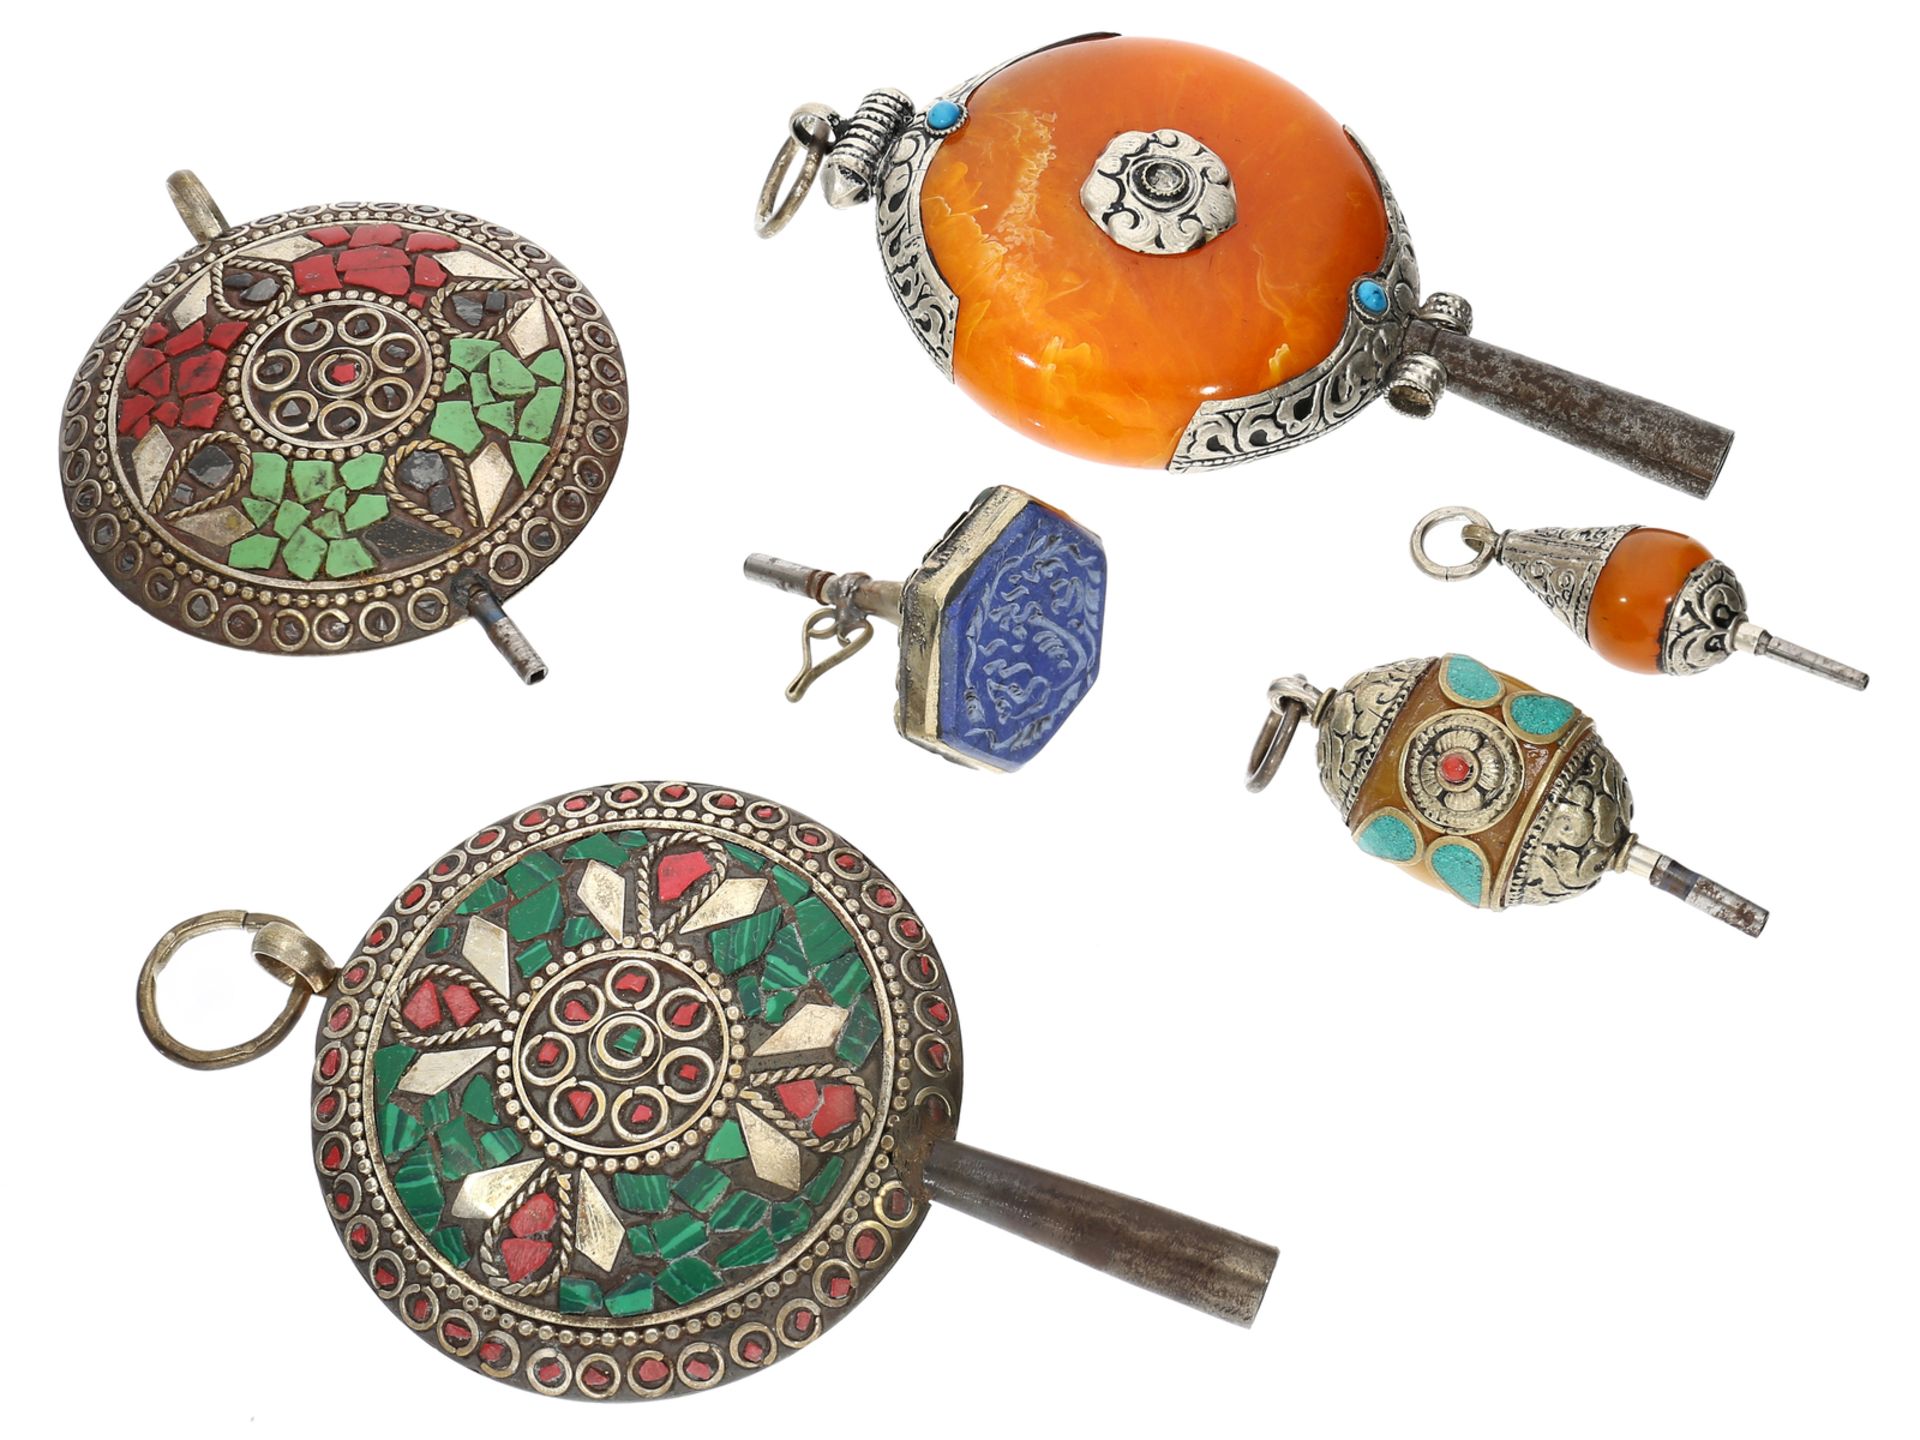 Uhrenschlüssel: kleine Sammlung äußerst seltener Uhrenschlüssel, vermutlich osmanisch, 19.Jh. - Bild 2 aus 2